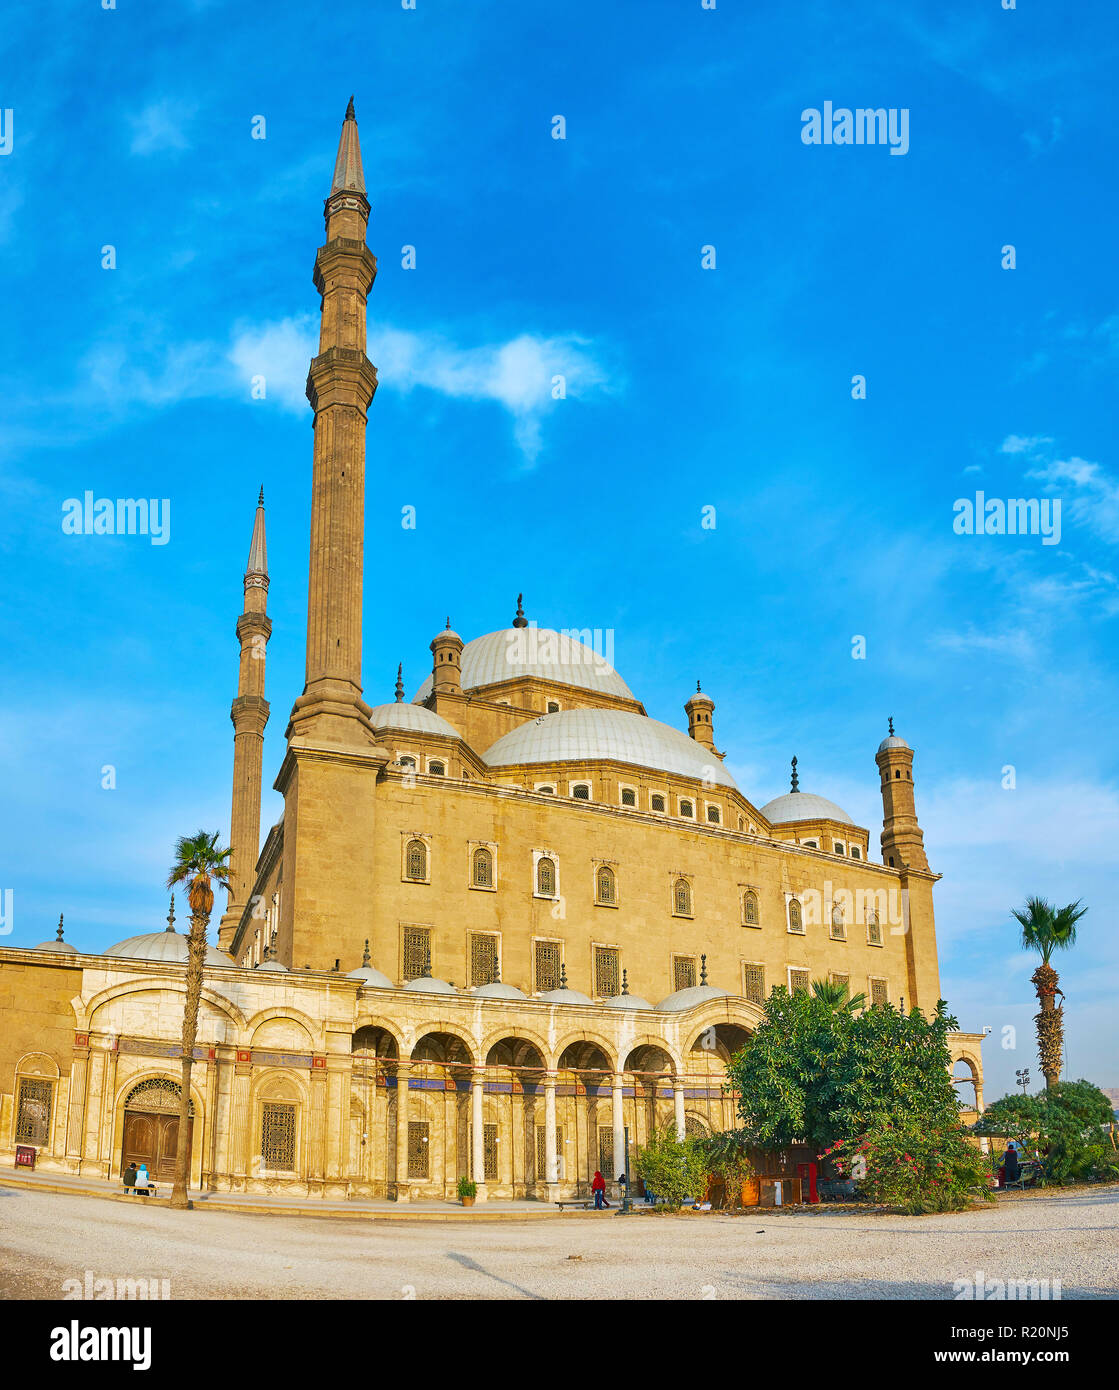 Alti minareti di stile Ottomano Alabastro (Muhammad Ali Moschea), uno dei più importanti monumenti della cittadella di Saladino al Cairo, Egitto. Foto Stock